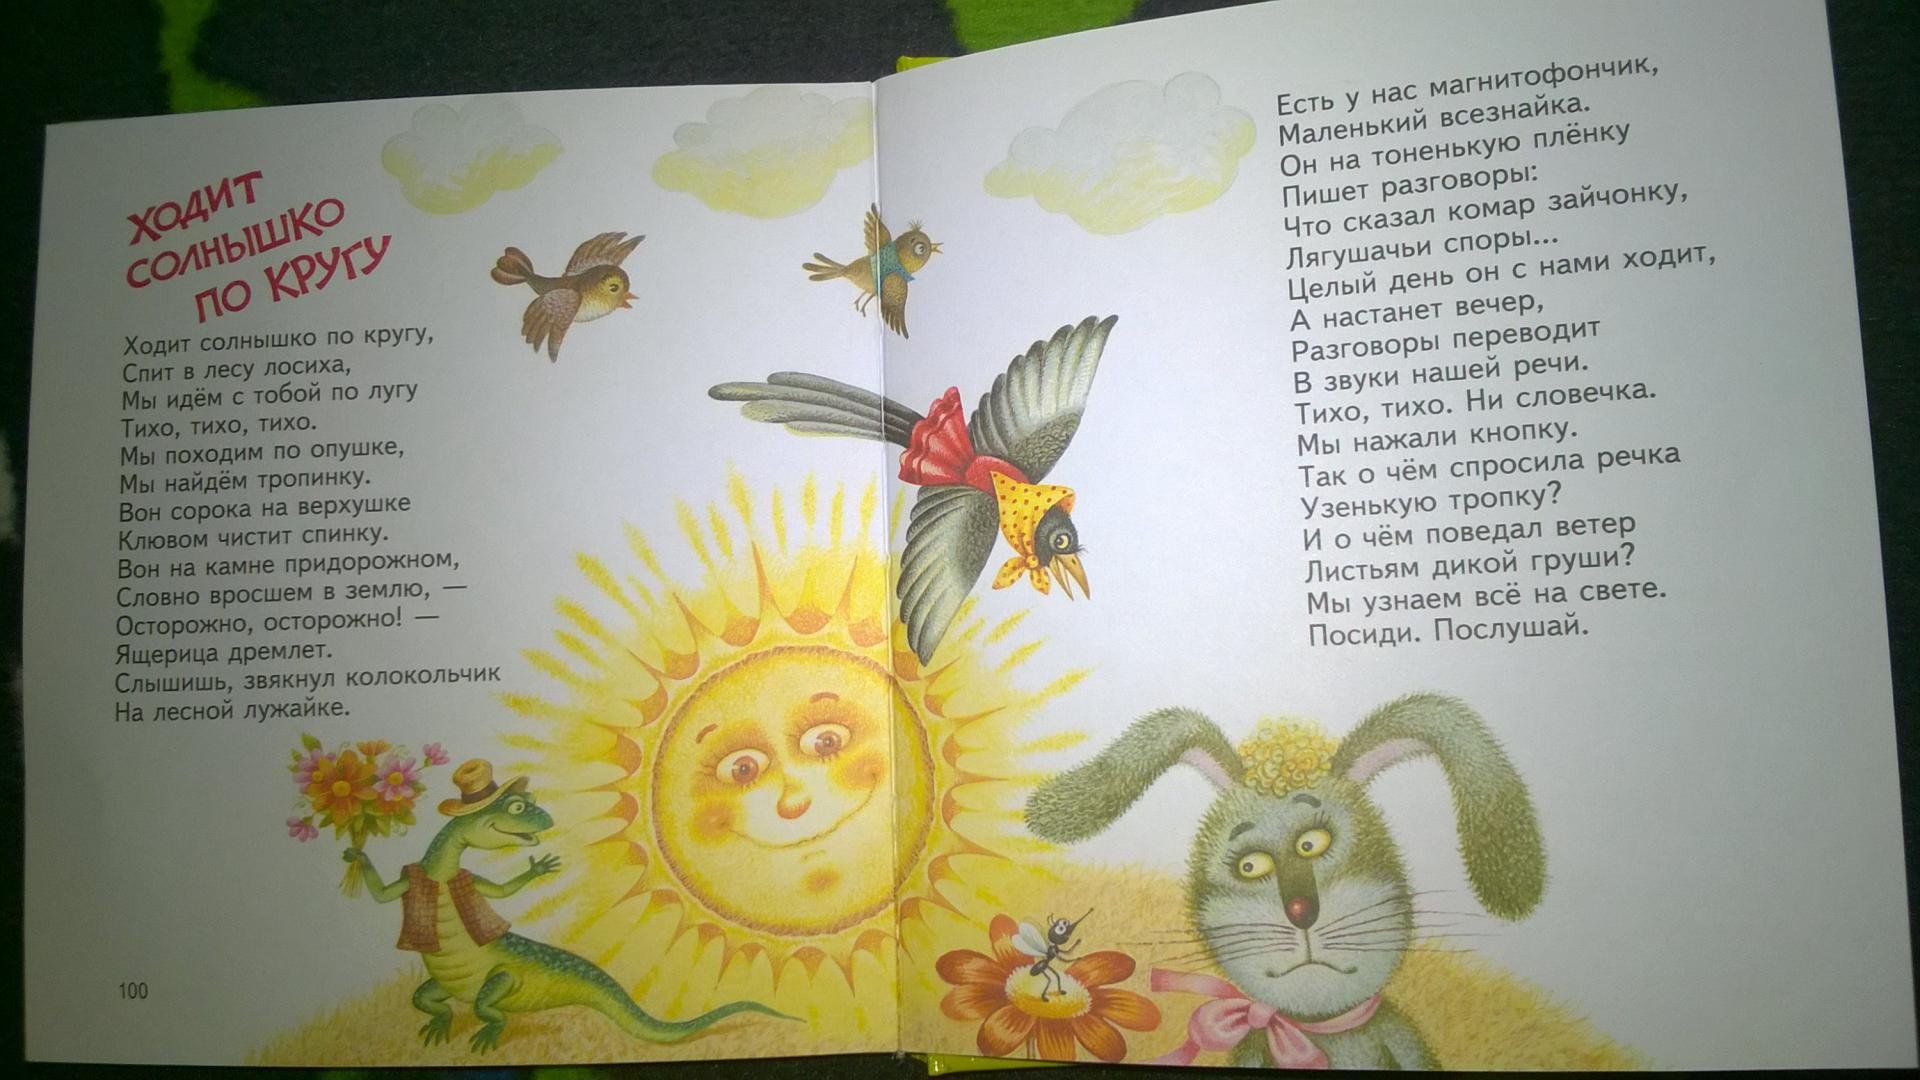 Пушкин свет наш солнышко ты ходишь. Книги про солнышко для детей. Стихотворение про солнце.